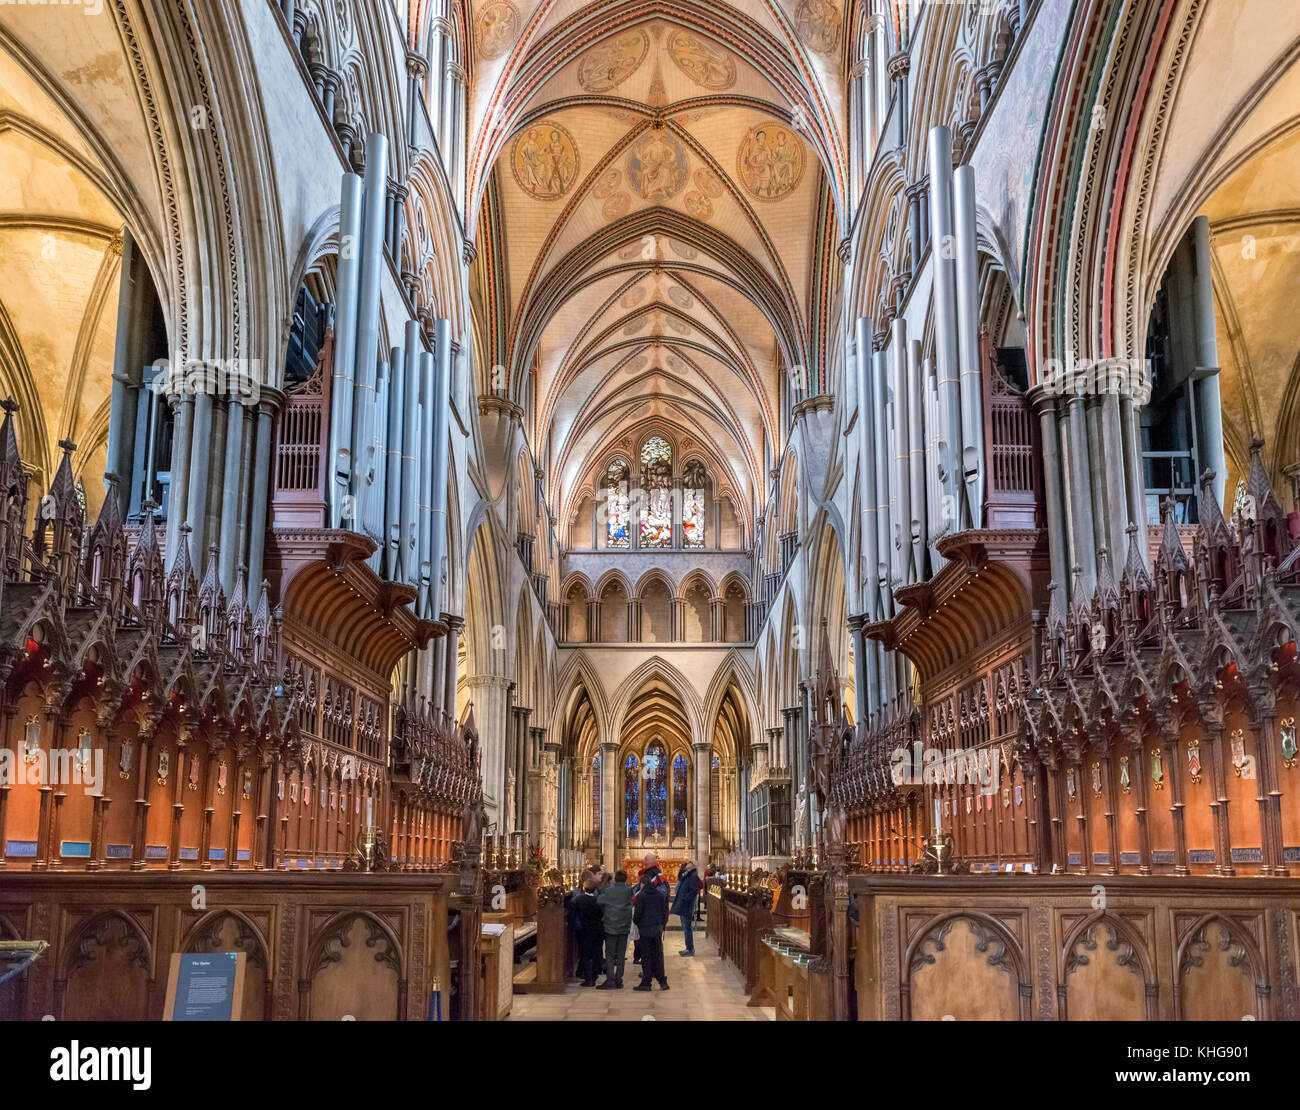 Quire (coro) en la Catedral de Salisbury, Salisbury, Wiltshire, Inglaterra, Reino Unido. Foto de stock